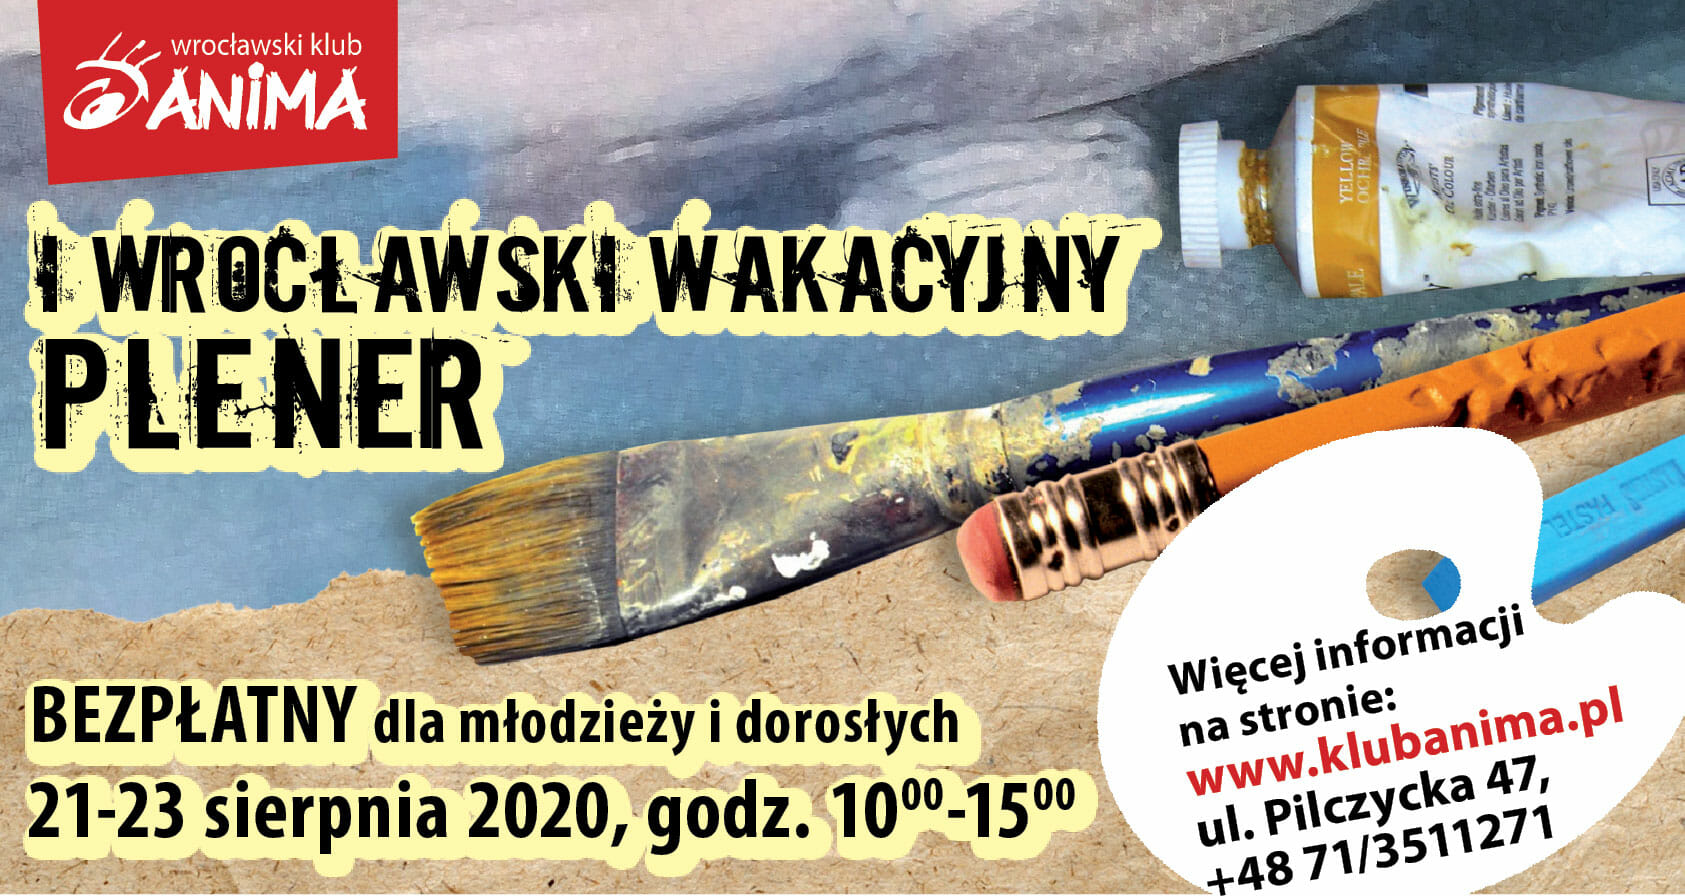 Wrocławski Wakacyjny Plener